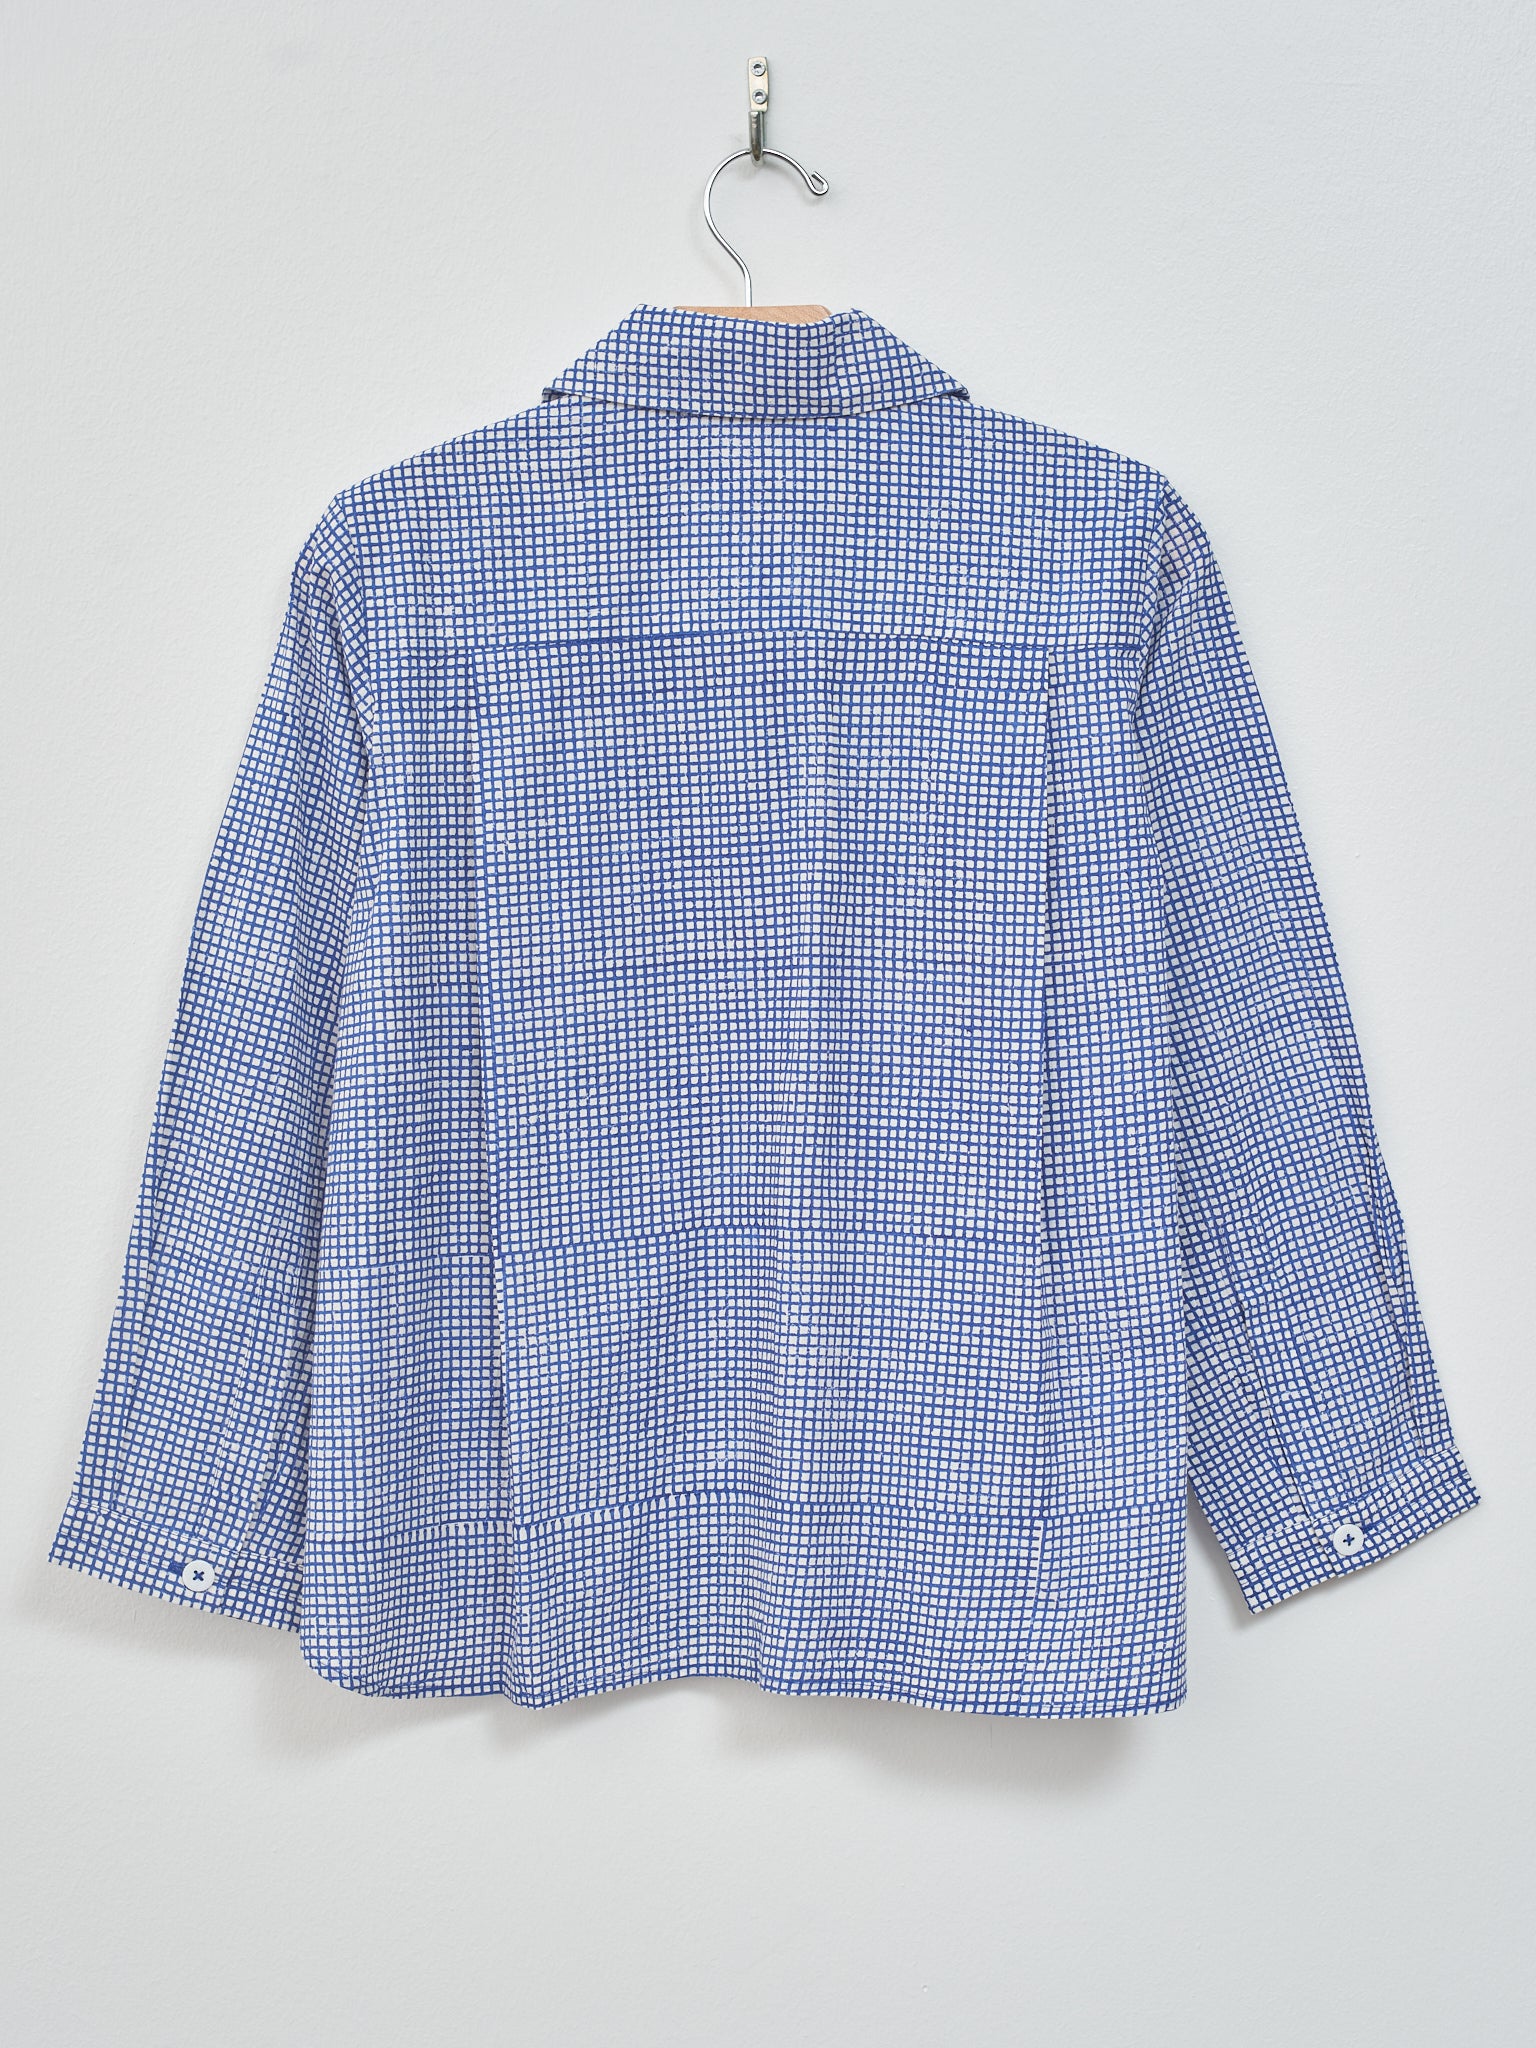 Namu Shop - Jan Machenhauer Kika Shirt Jacket - Blue